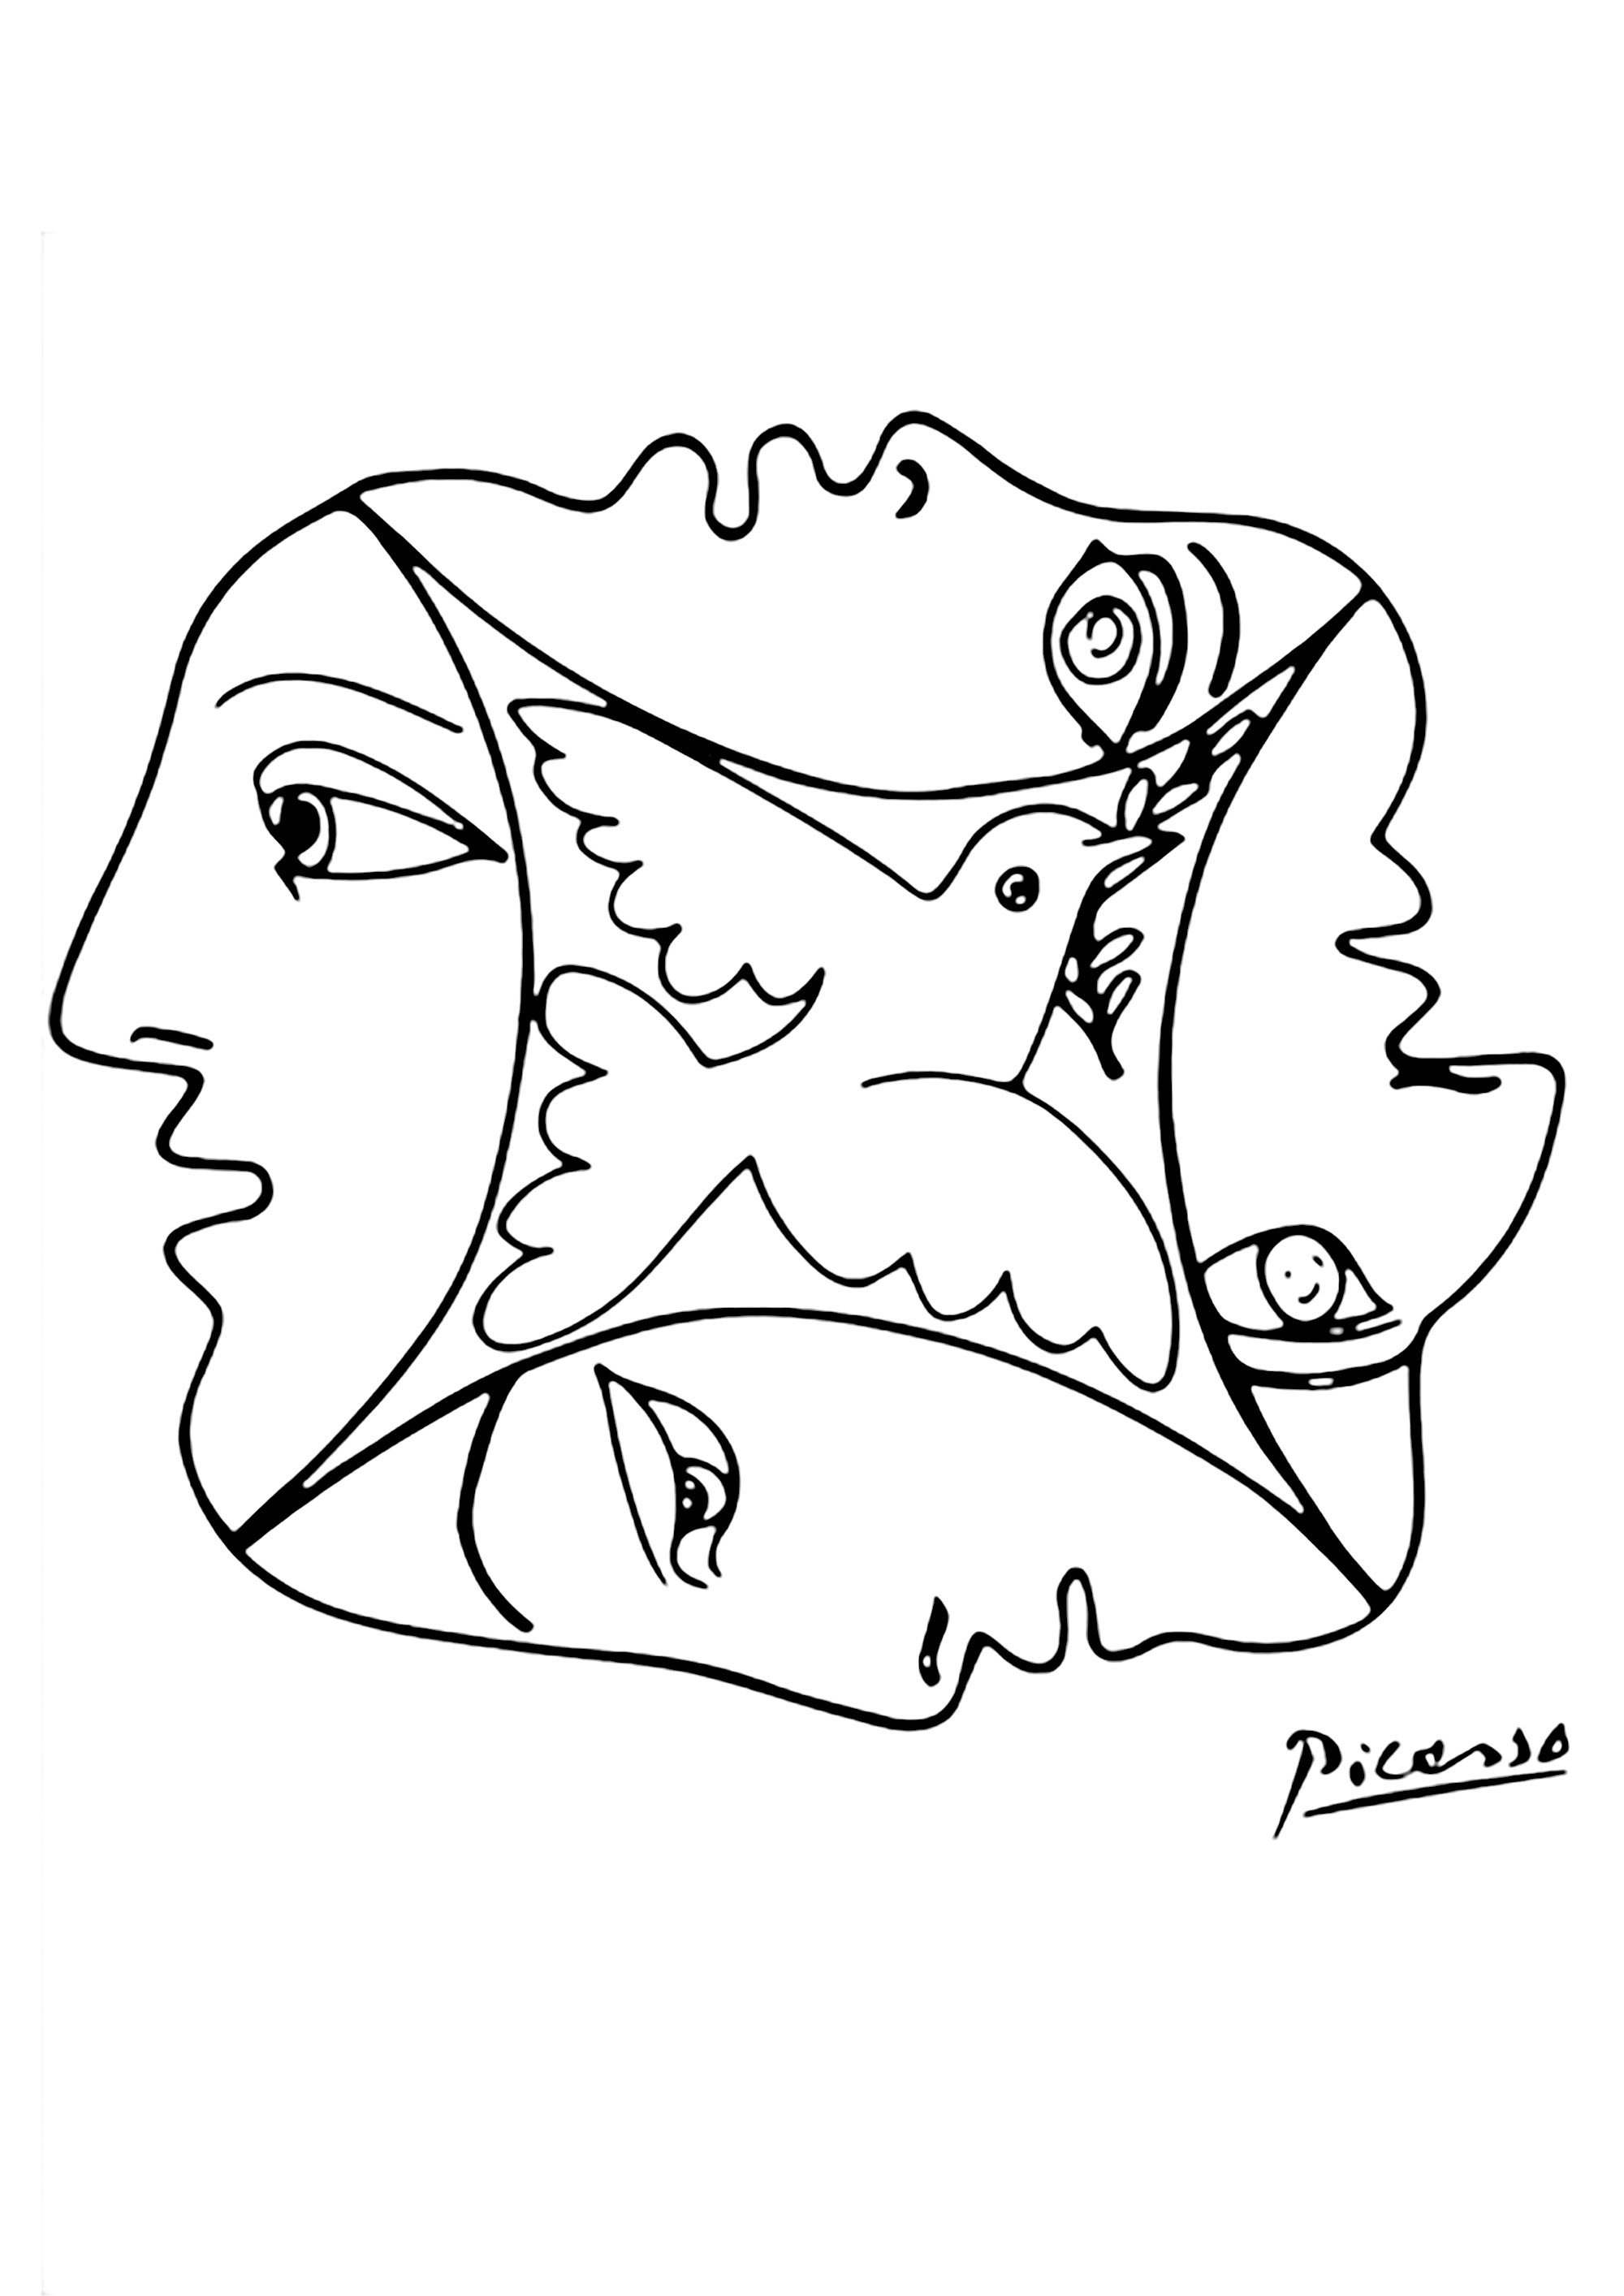 Coloriage créé à partir d'un dessin de Pablo Picasso avec des visages et une colombe. Magnifique dessin symbolisant la paix et la fraternité